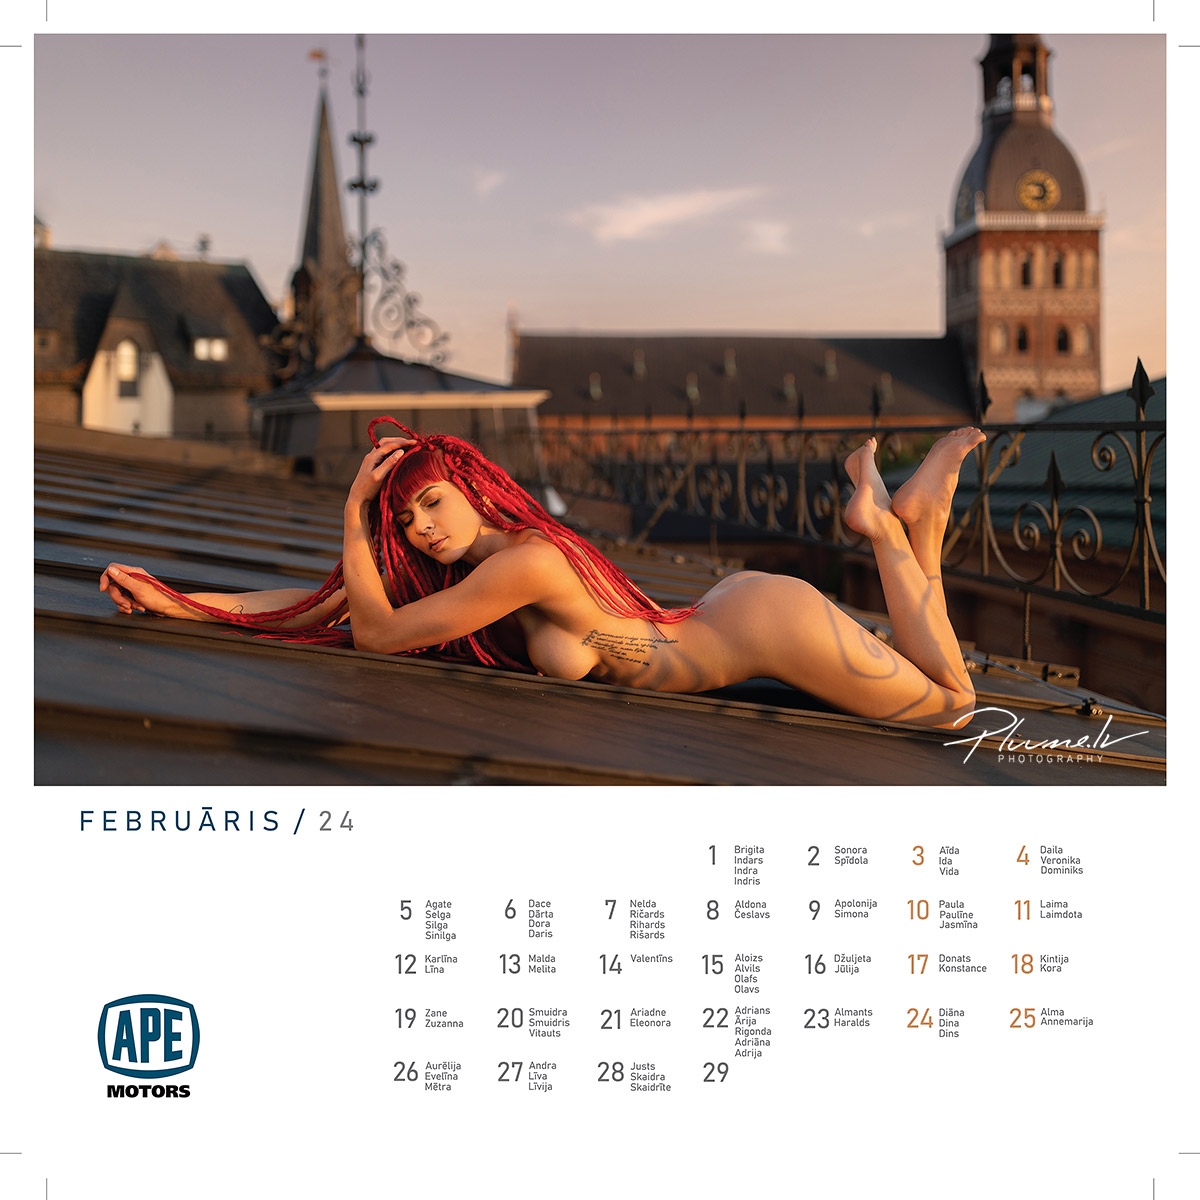 Mārtiņš Plūme | Erotisks kailfoto mākslas kalendārs 2024 gadam, APE Motors | Kailfoto kalendars erotisks kalendars fotografs Martins Plume APE Motors 4